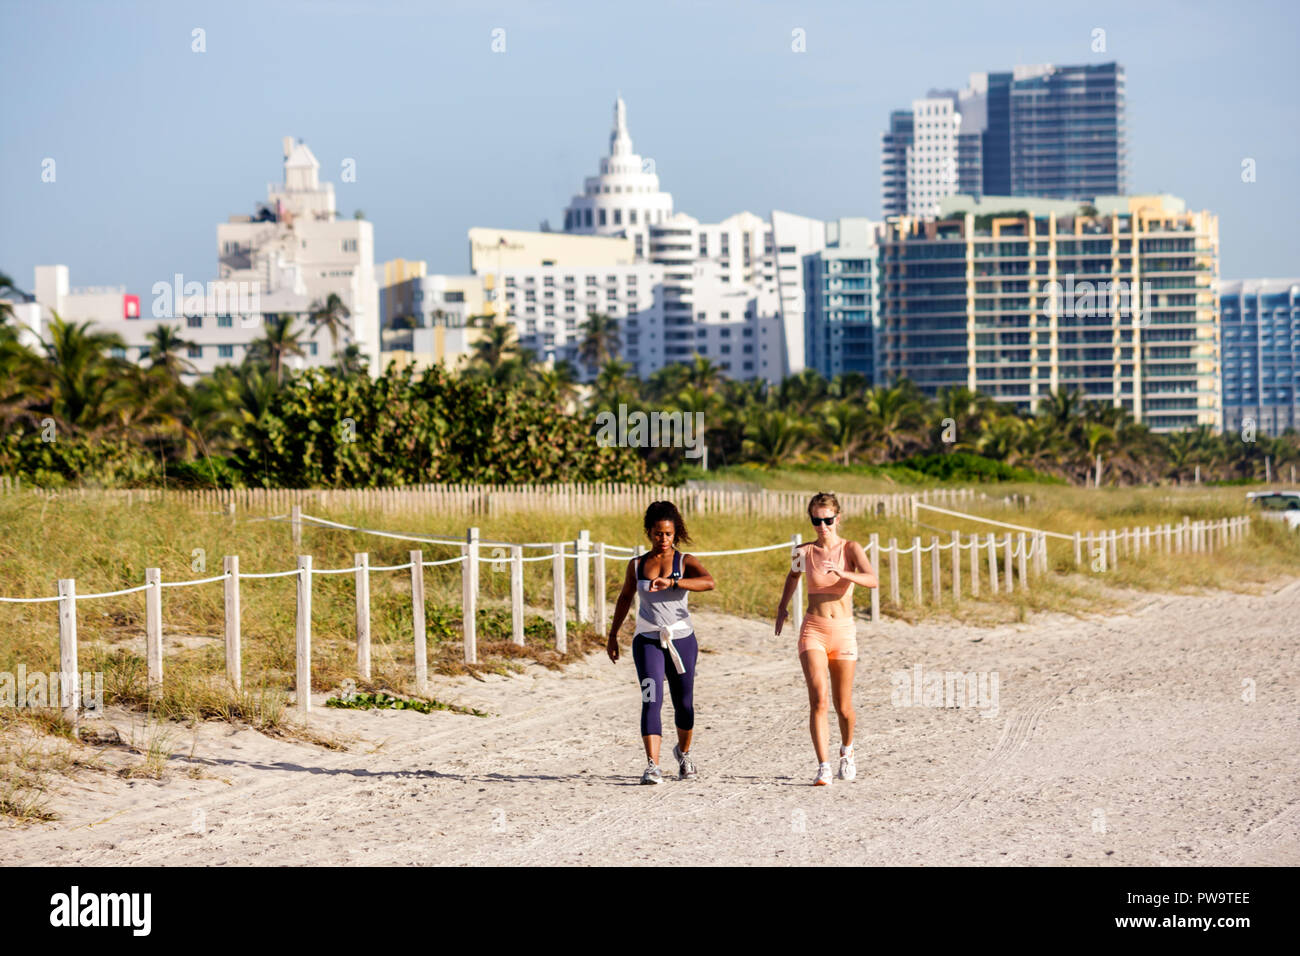 Miami Beach Florida,sabbia,duna,litorale,spiaggia pubblica,donne donne nere,jogger,joggers,jogging,runner,runner,corsa,esercizio,fitness,salute,mo Foto Stock